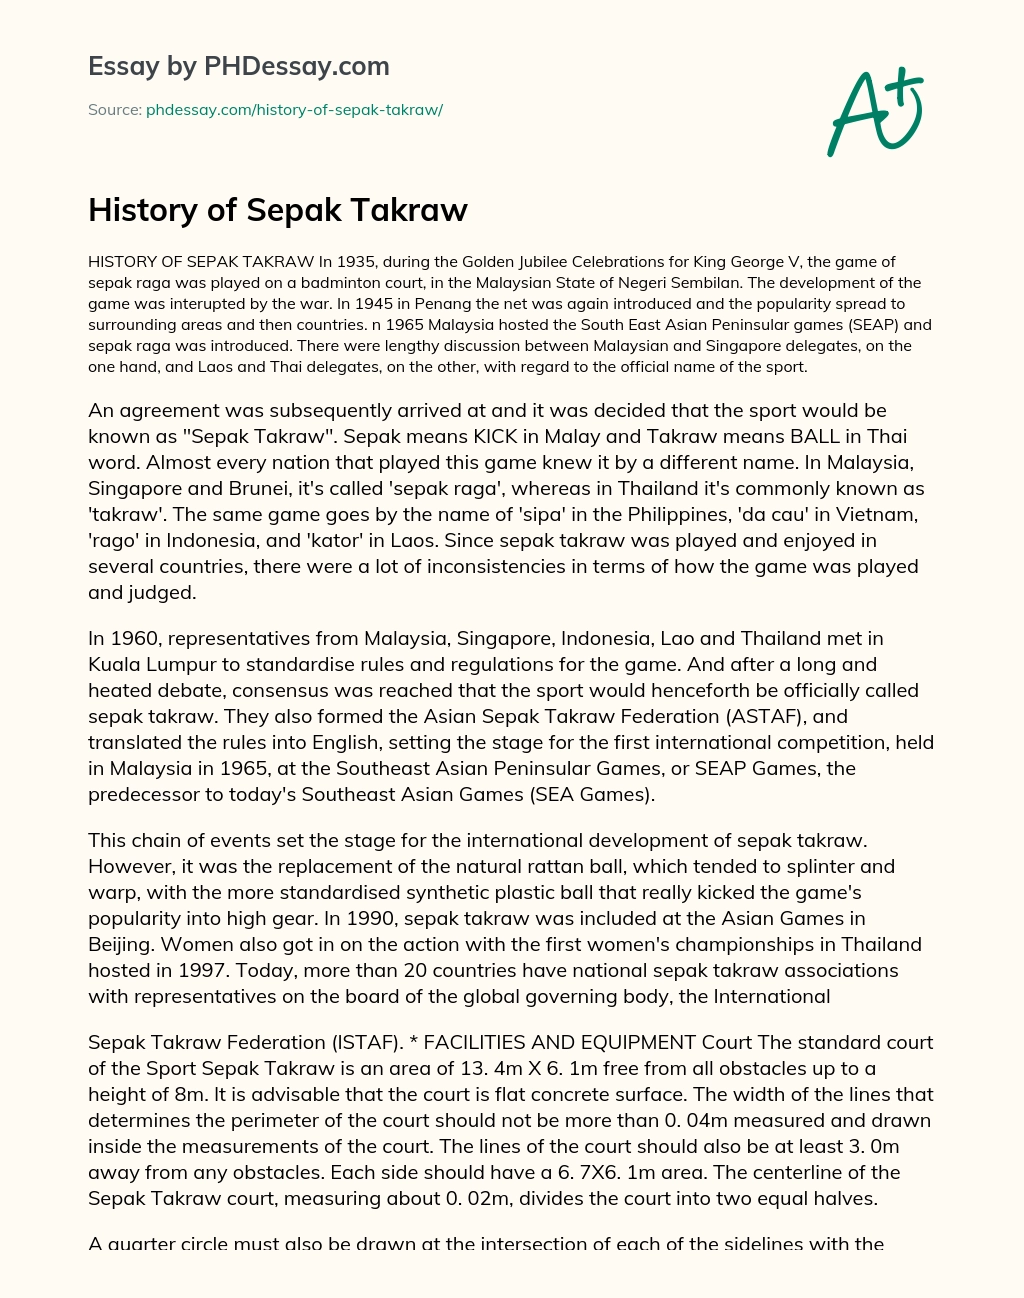 History of Sepak Takraw essay